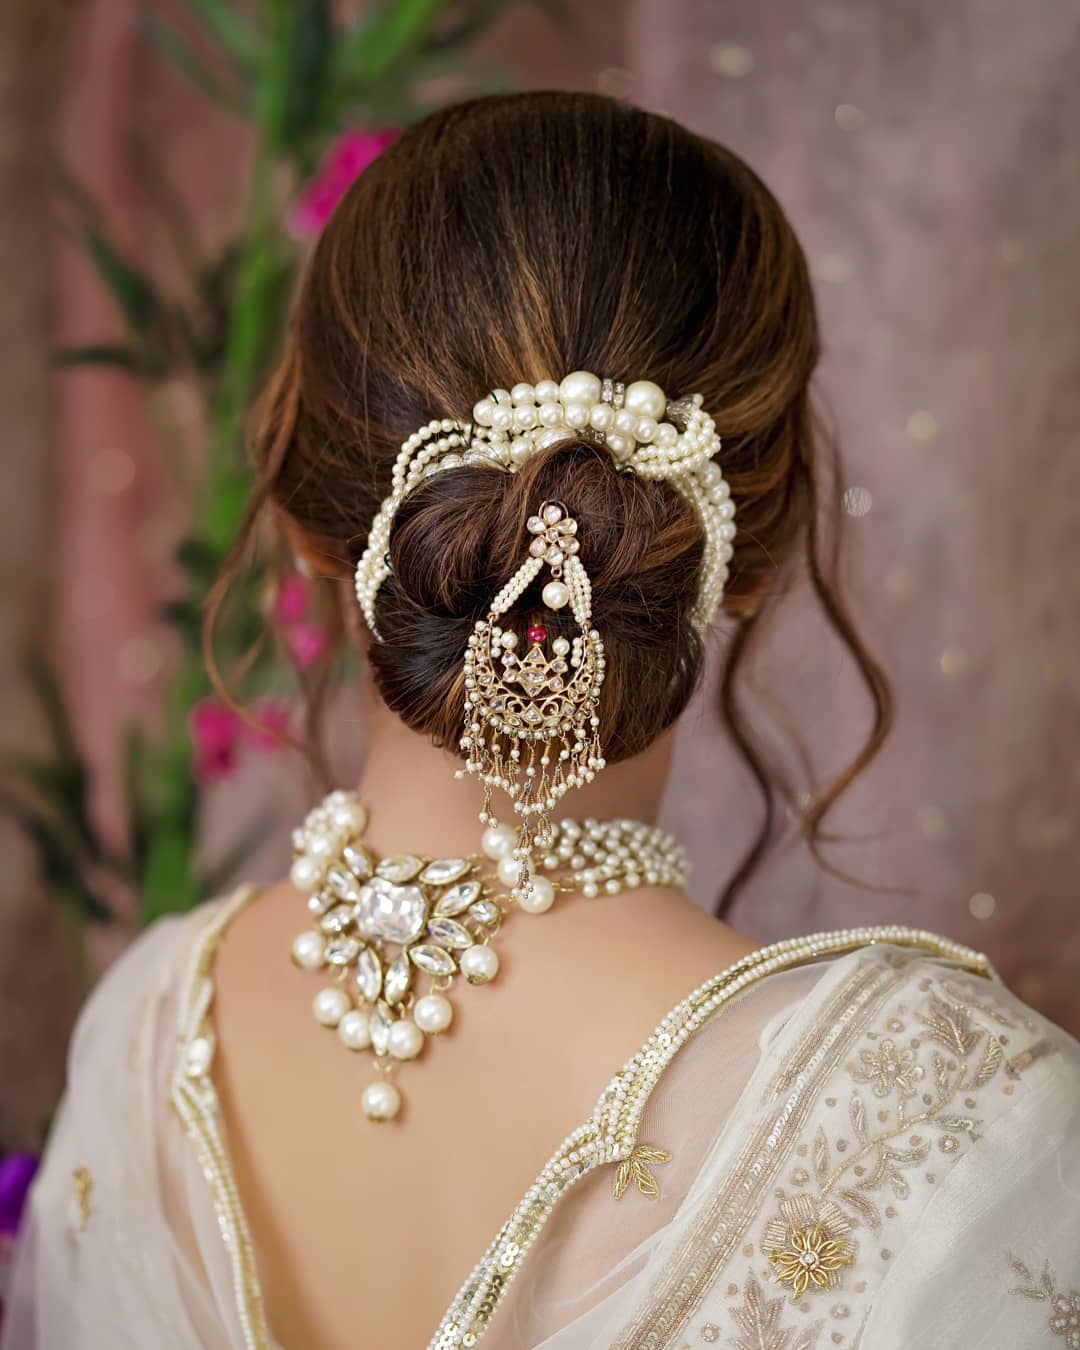 hair accessories, bridal hair accessories, DIY hair accessory